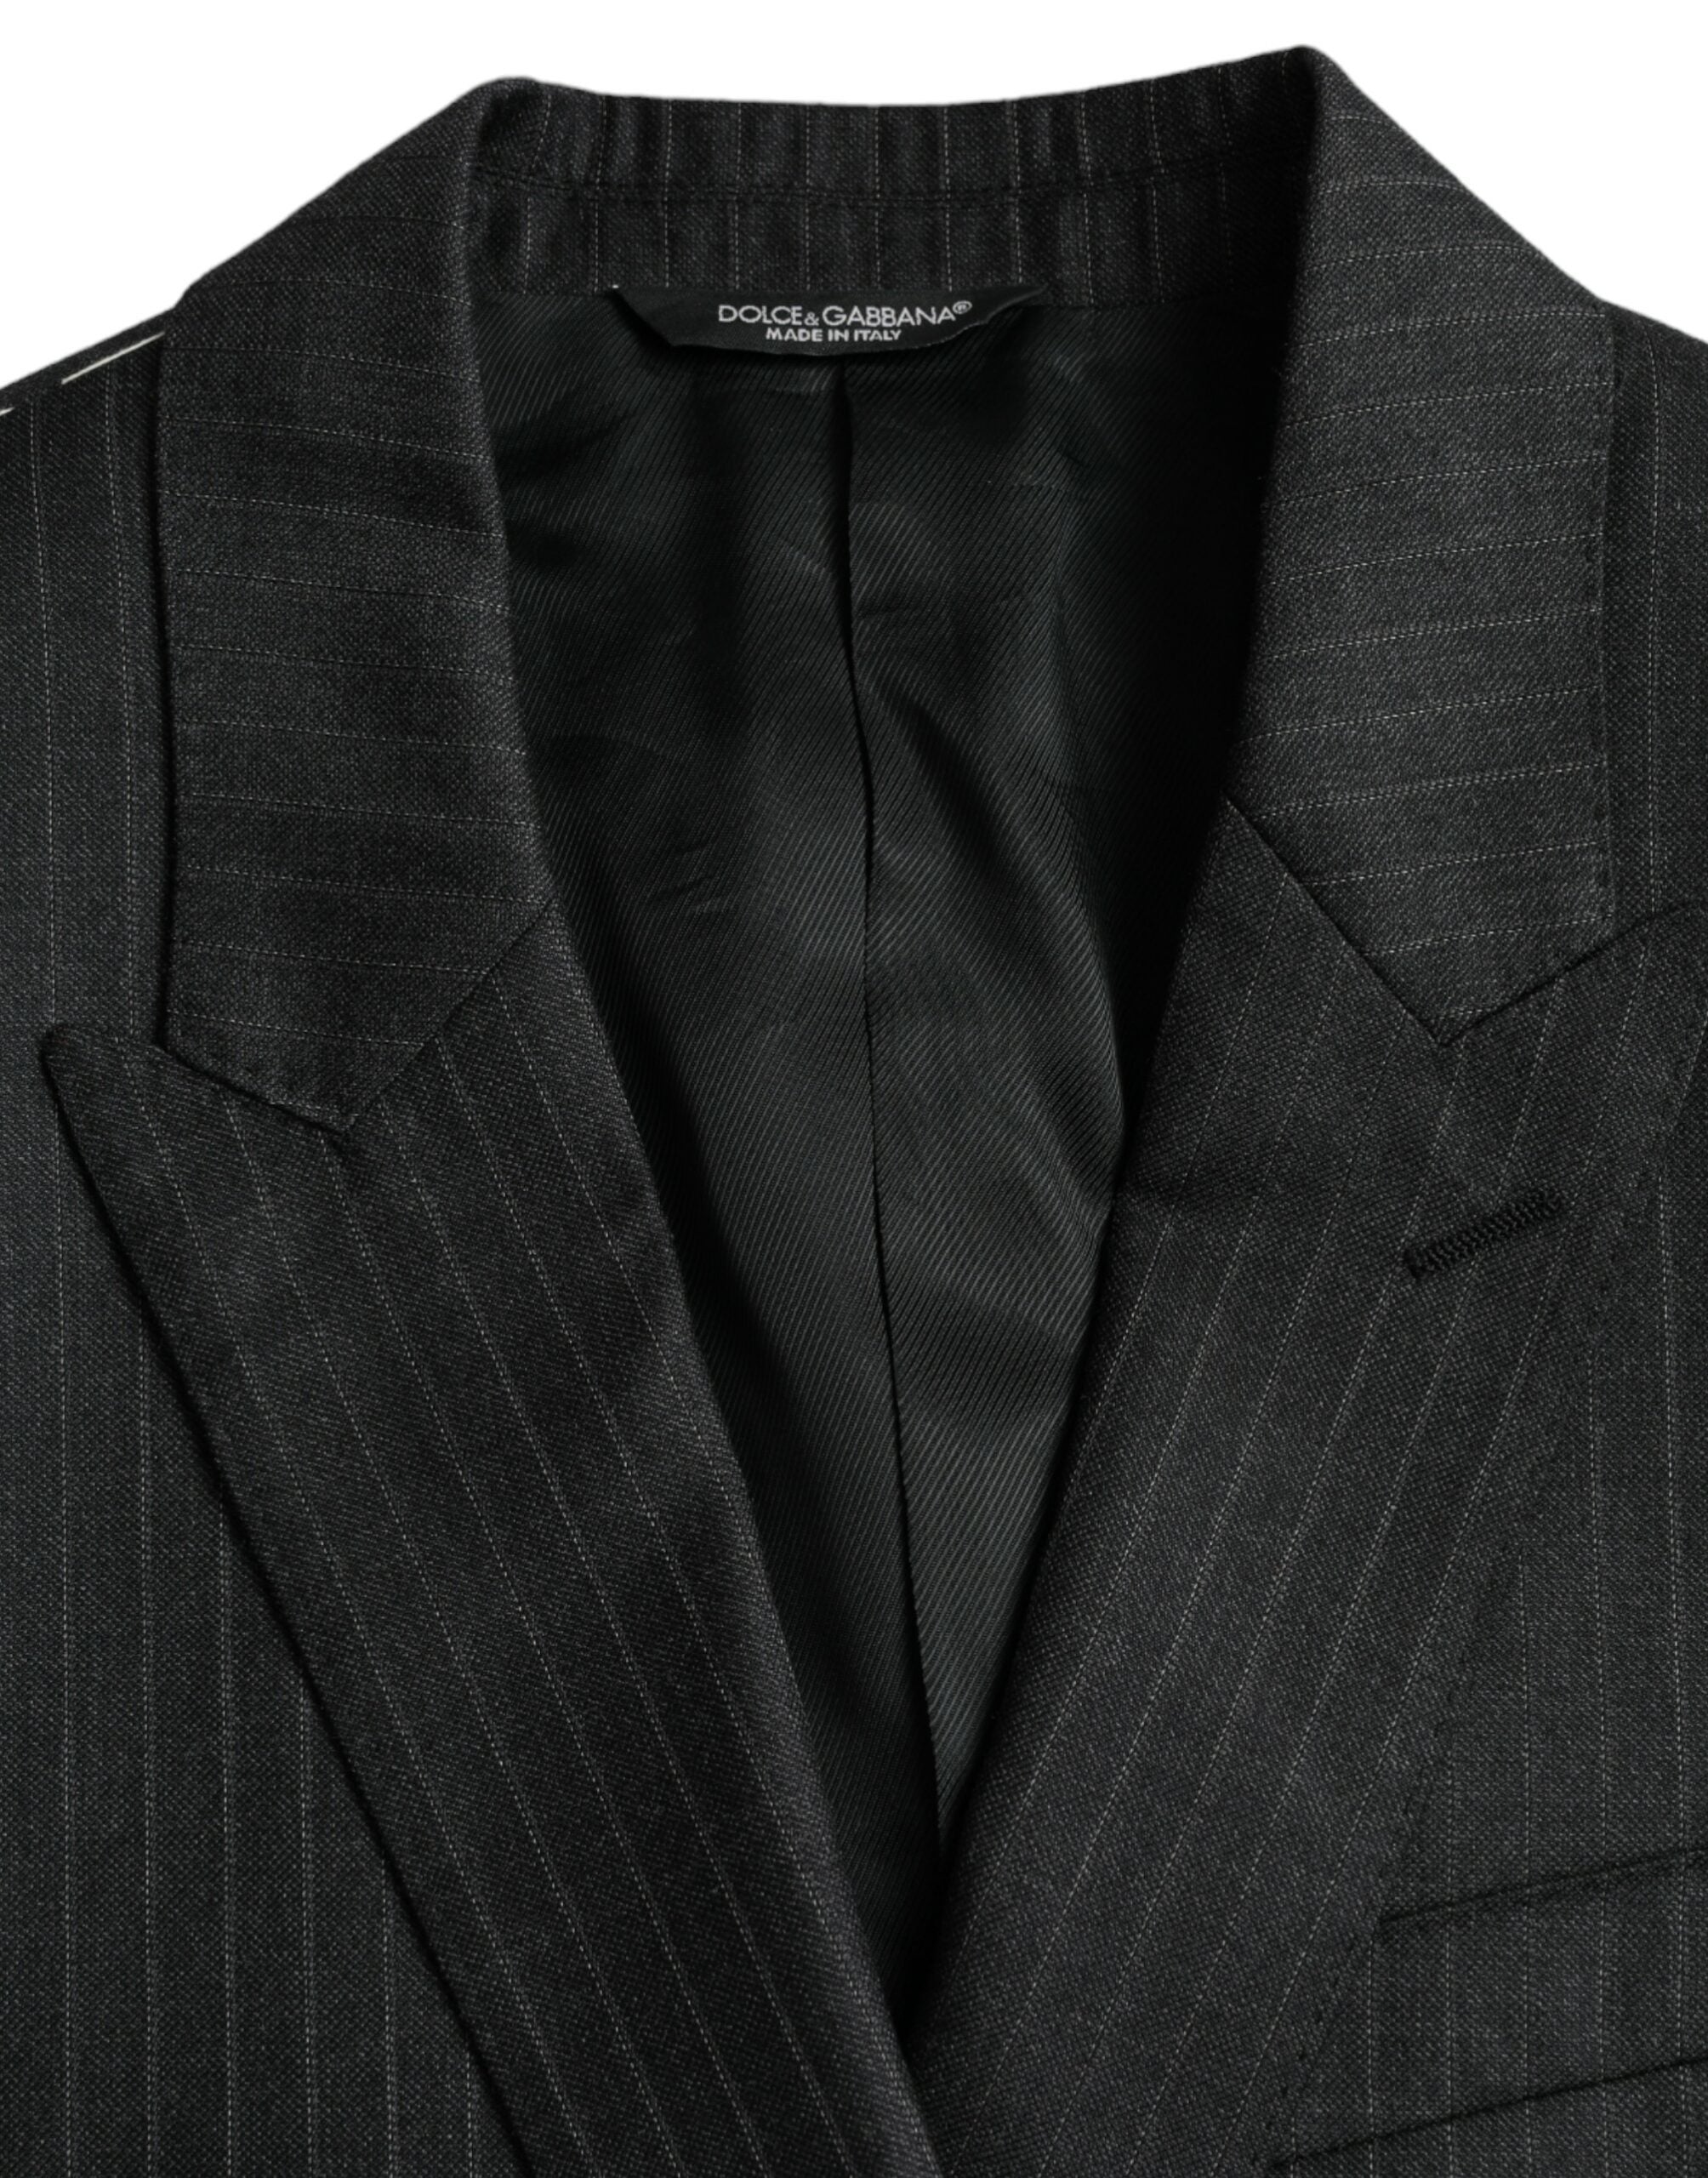 Dolce & Gabbana Black Stripe MARTINI Single Breasted Coat Blazer